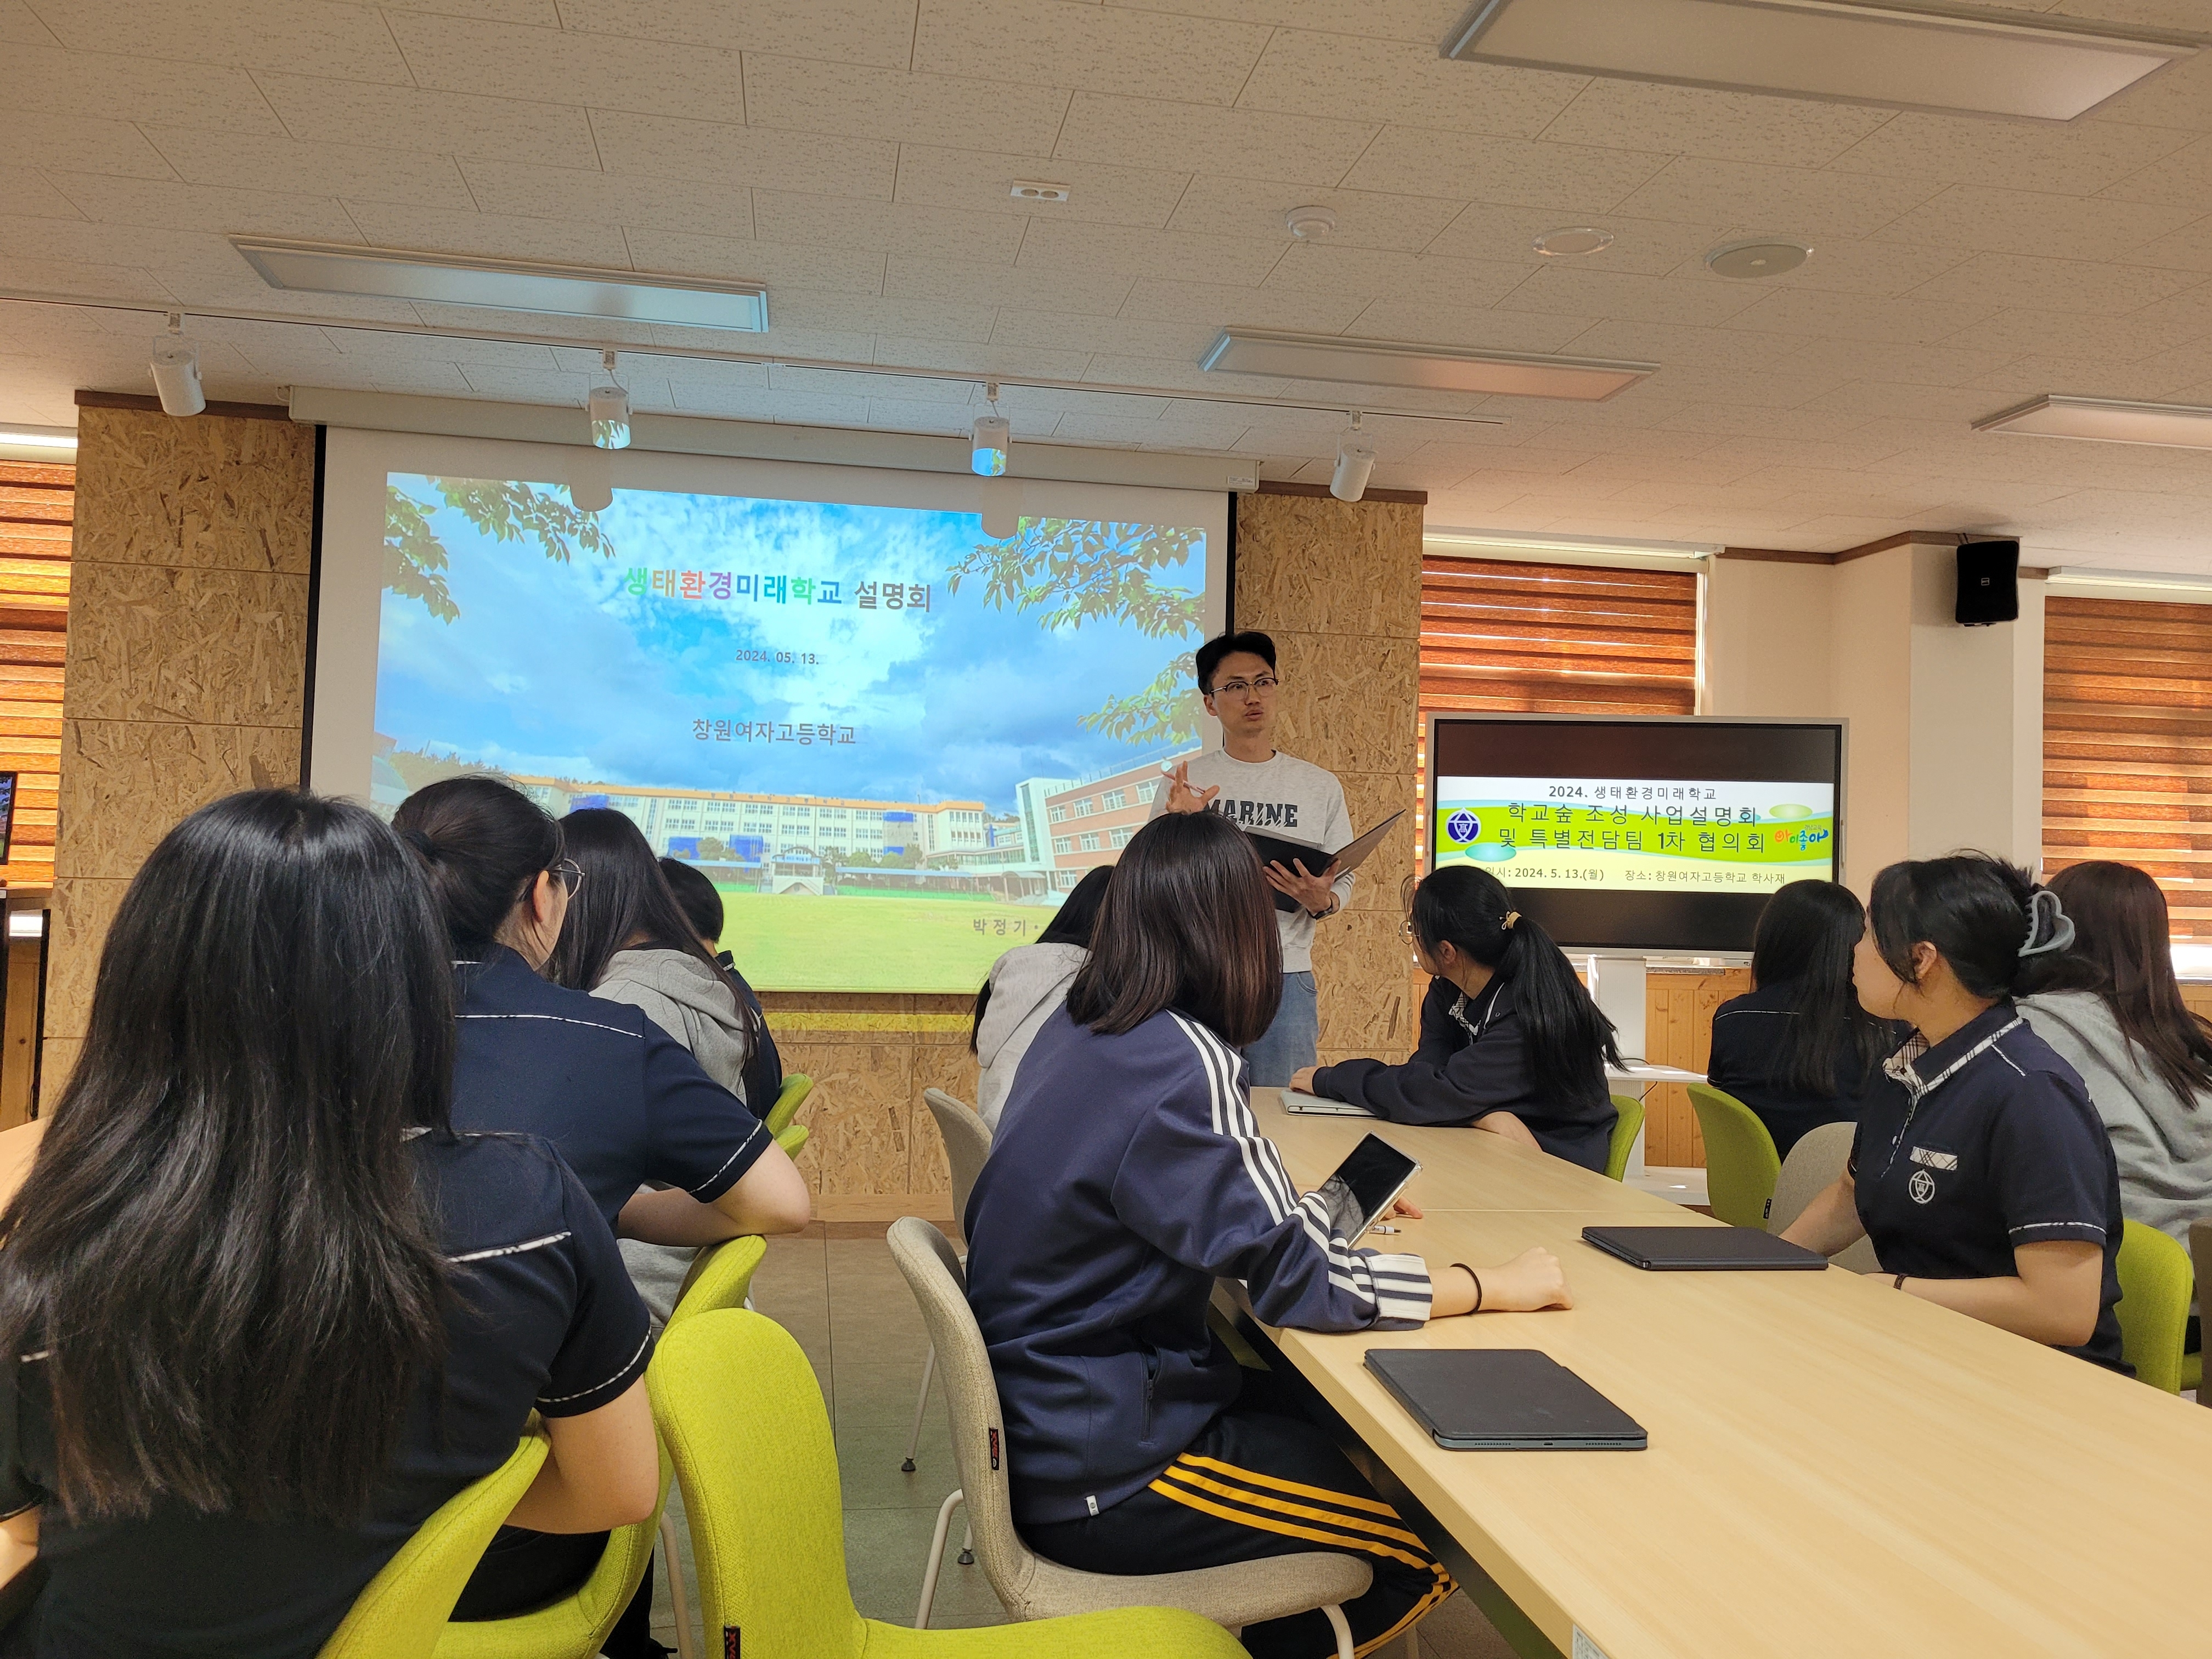 2024. 생태환경미래학교 학교숲 조성 사업설명회(24.5.13)